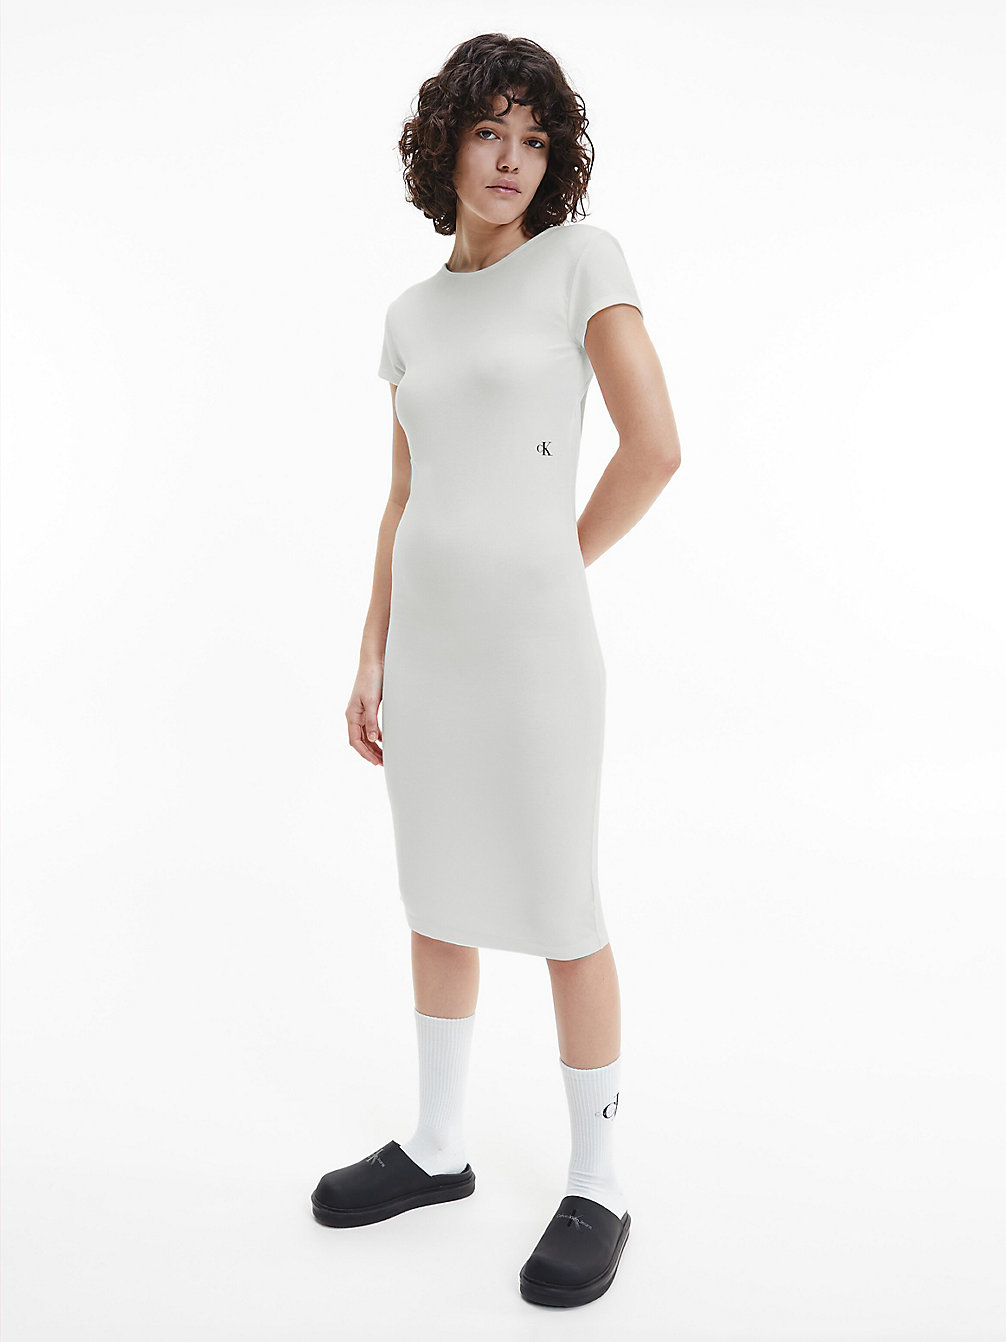 BRIGHT WHITE > Облегающее платье миди с открытой спиной > undefined Женщины - Calvin Klein